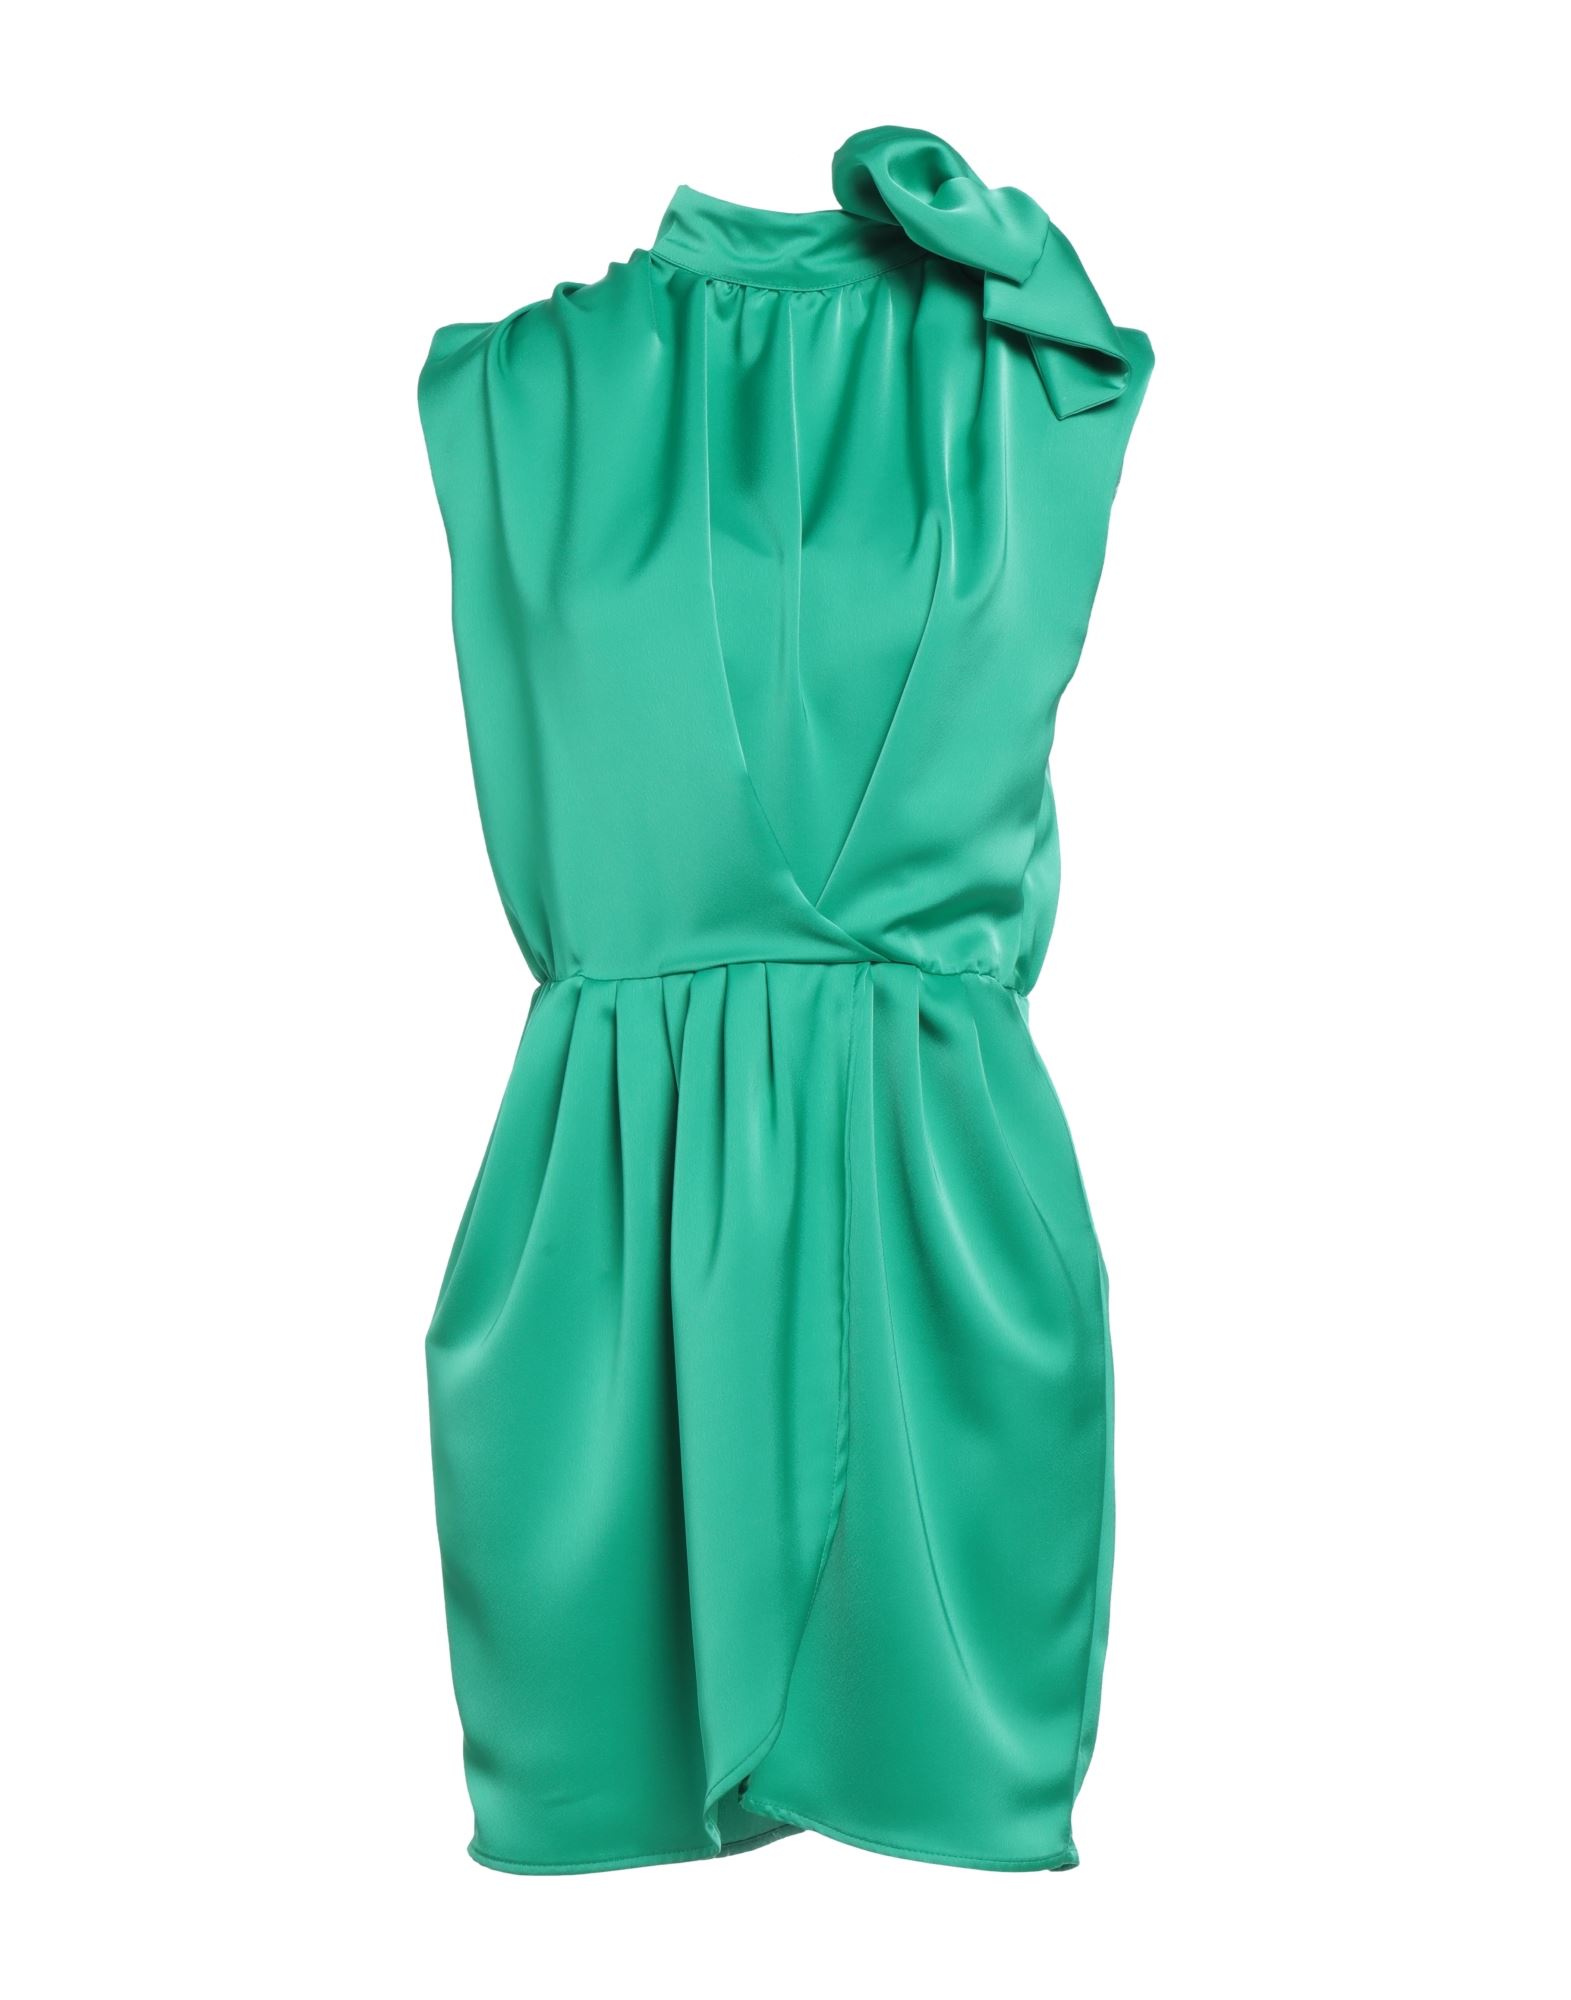 Actualee Short Dresses In Green